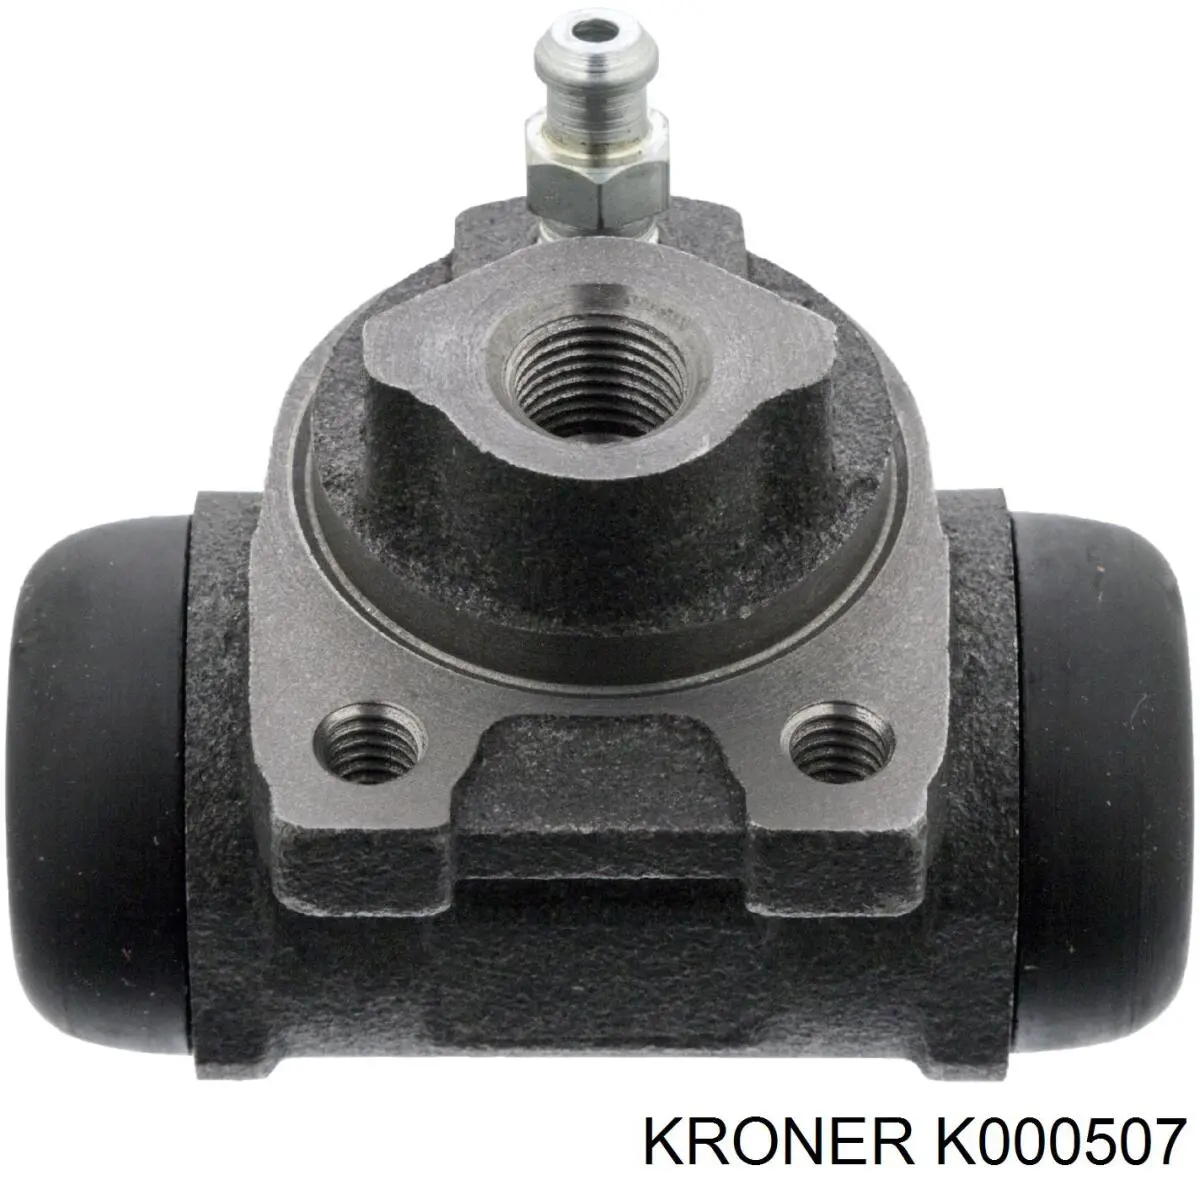 K000507 Kroner цилиндр тормозной колесный рабочий задний